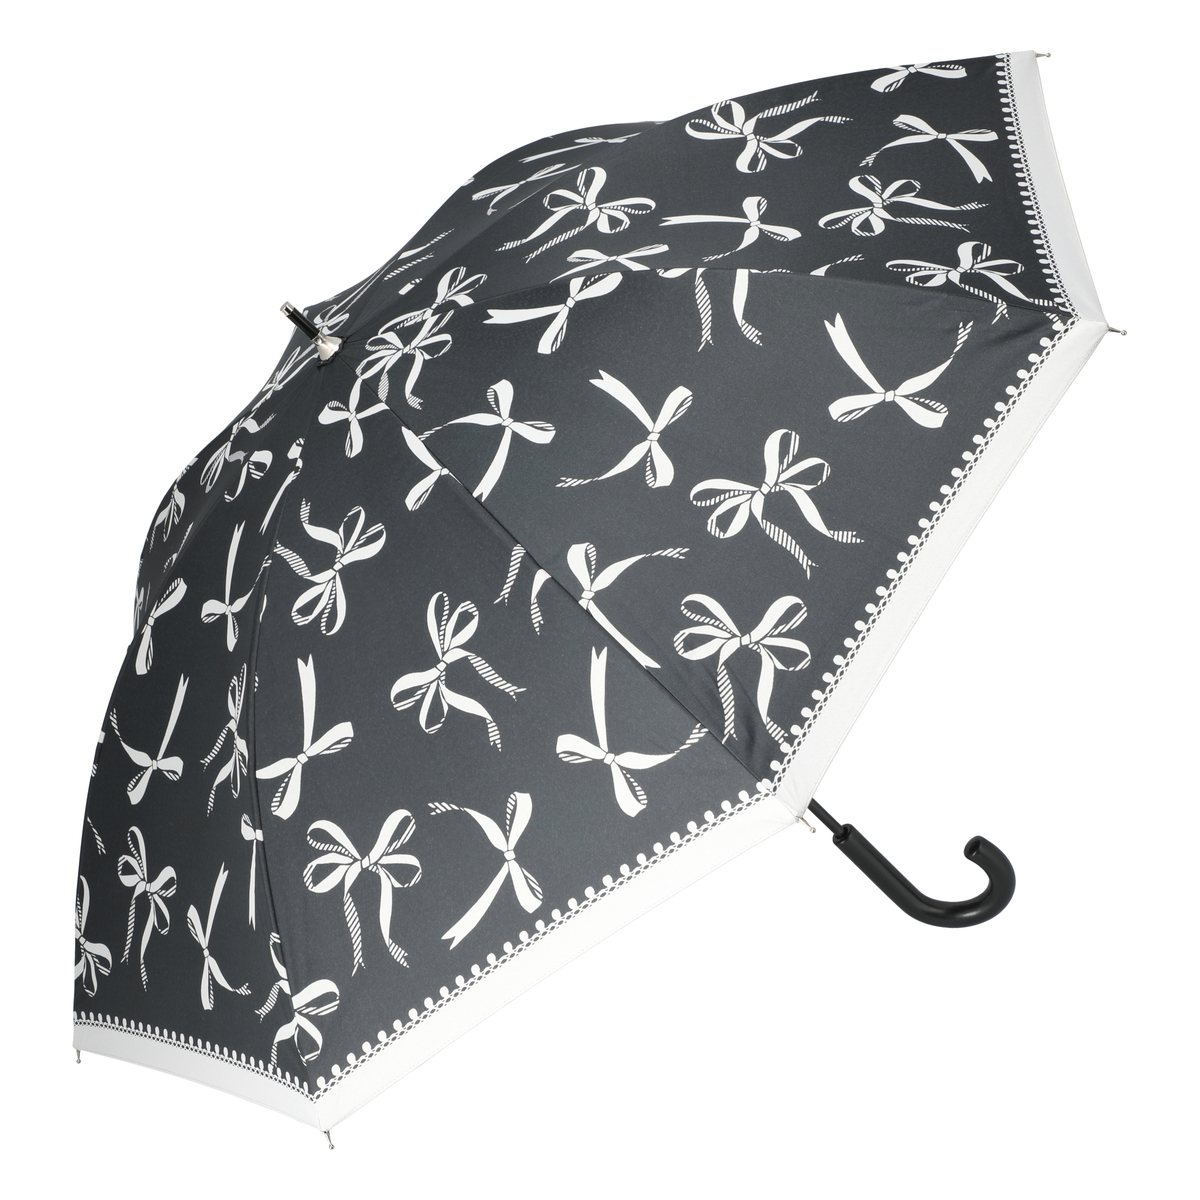  ルナジュメール UV+1級遮光+晴雨兼用 モノクロショート傘  リボン柄ブラック